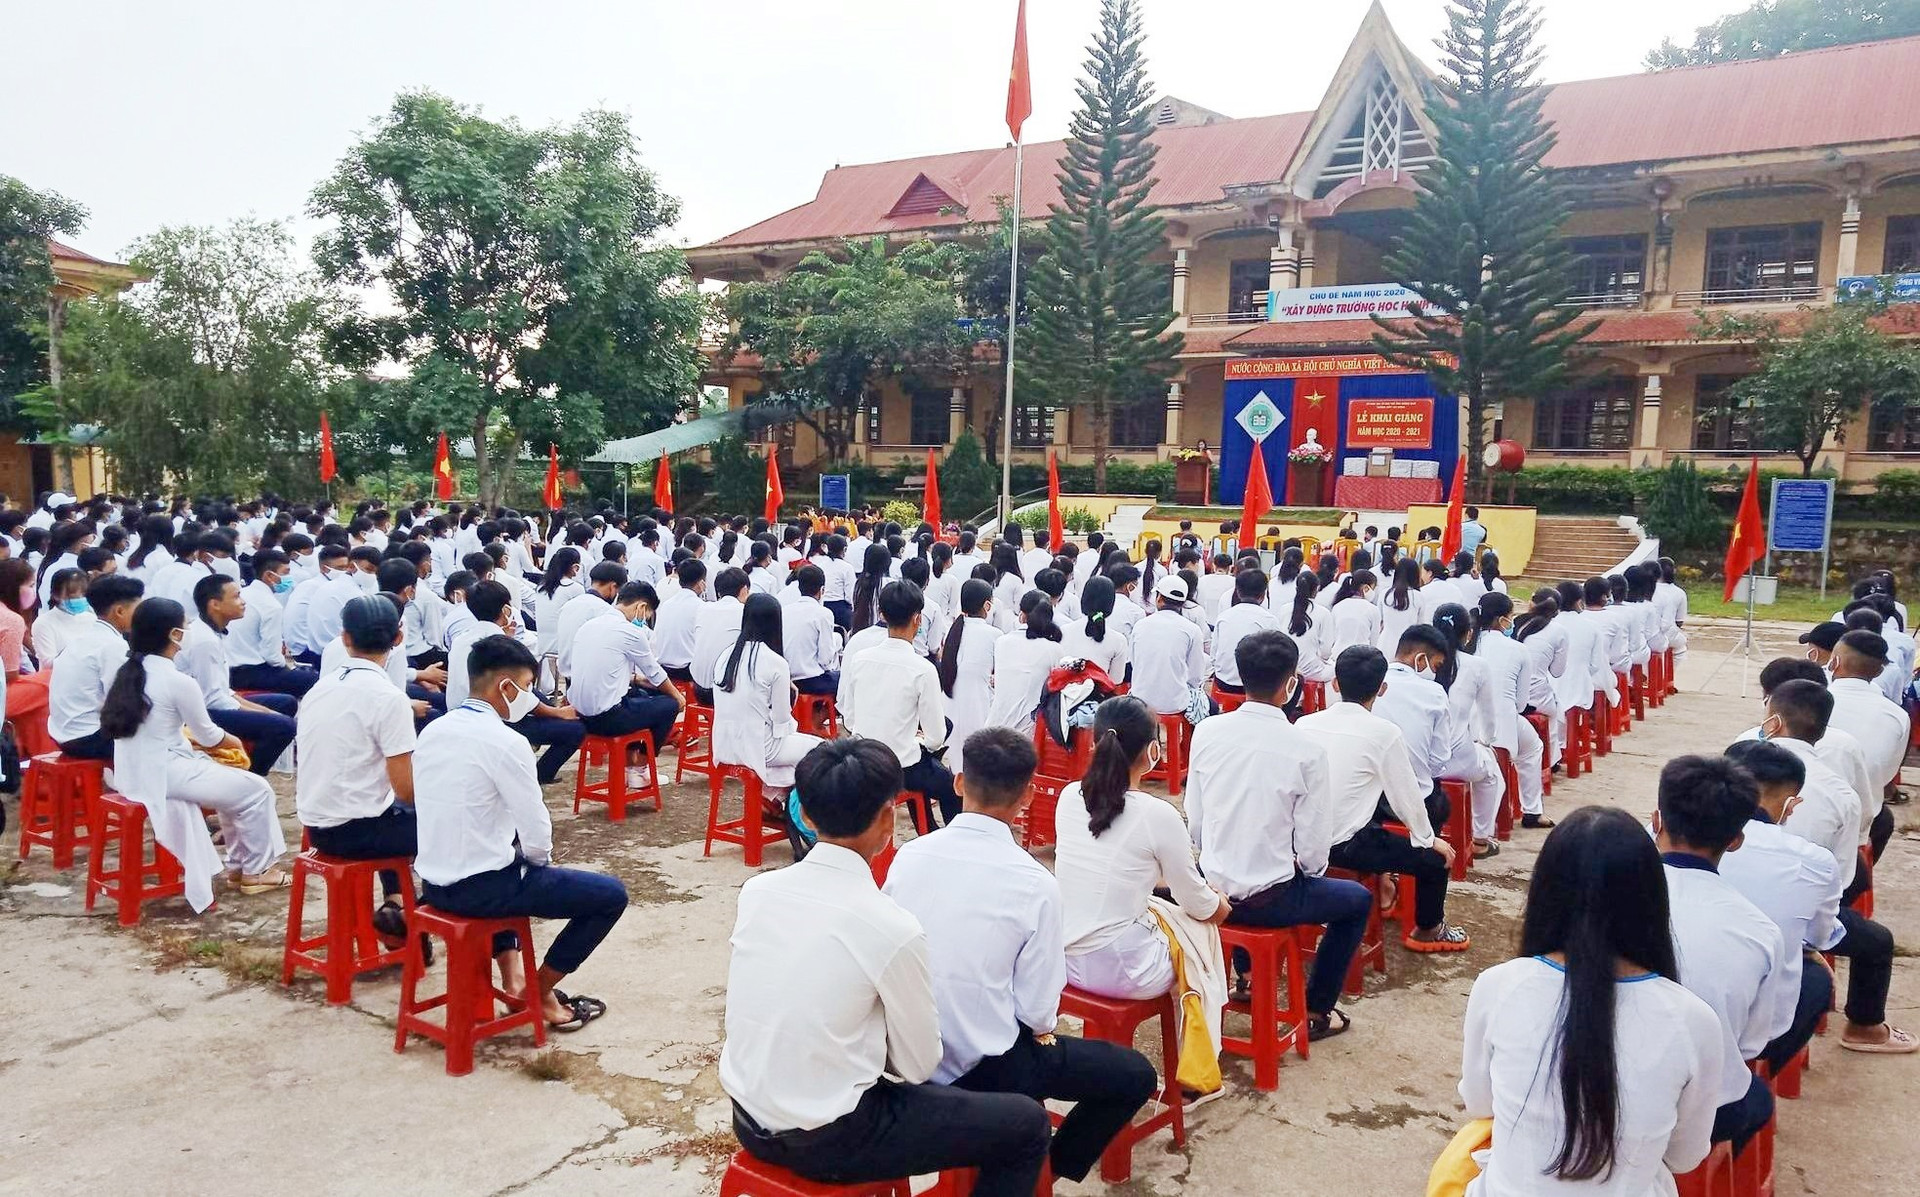 Trường THPT Tây Giang chính thức khai giảng bước vào năm học mới 2020-2021